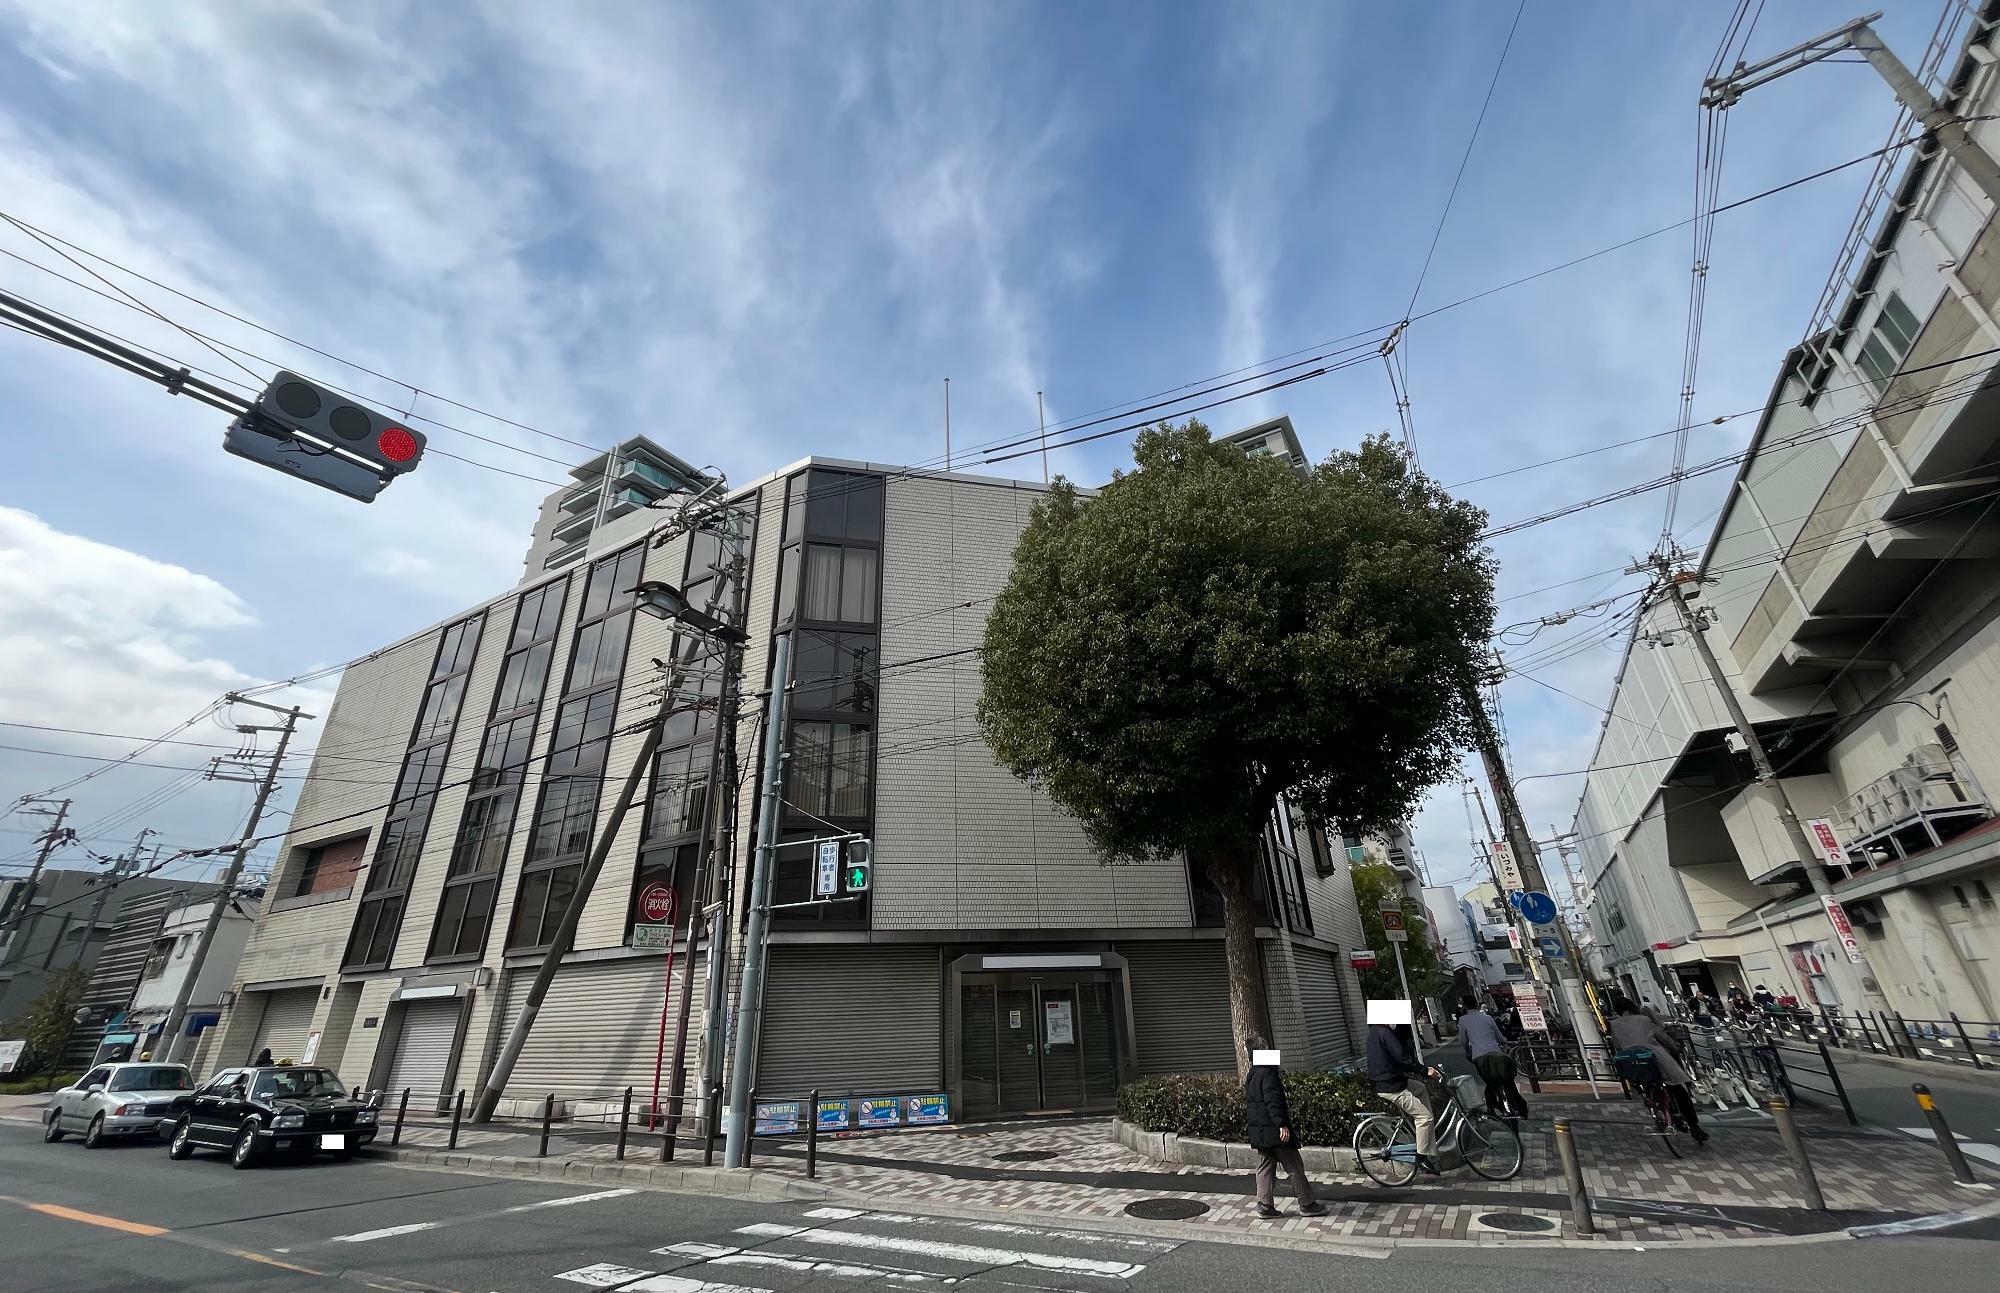 三菱UFJ銀行　ATMコーナー針中野駅西がある建物。かつては同銀行の針中野支店だった。右側に見えるのは針中野駅